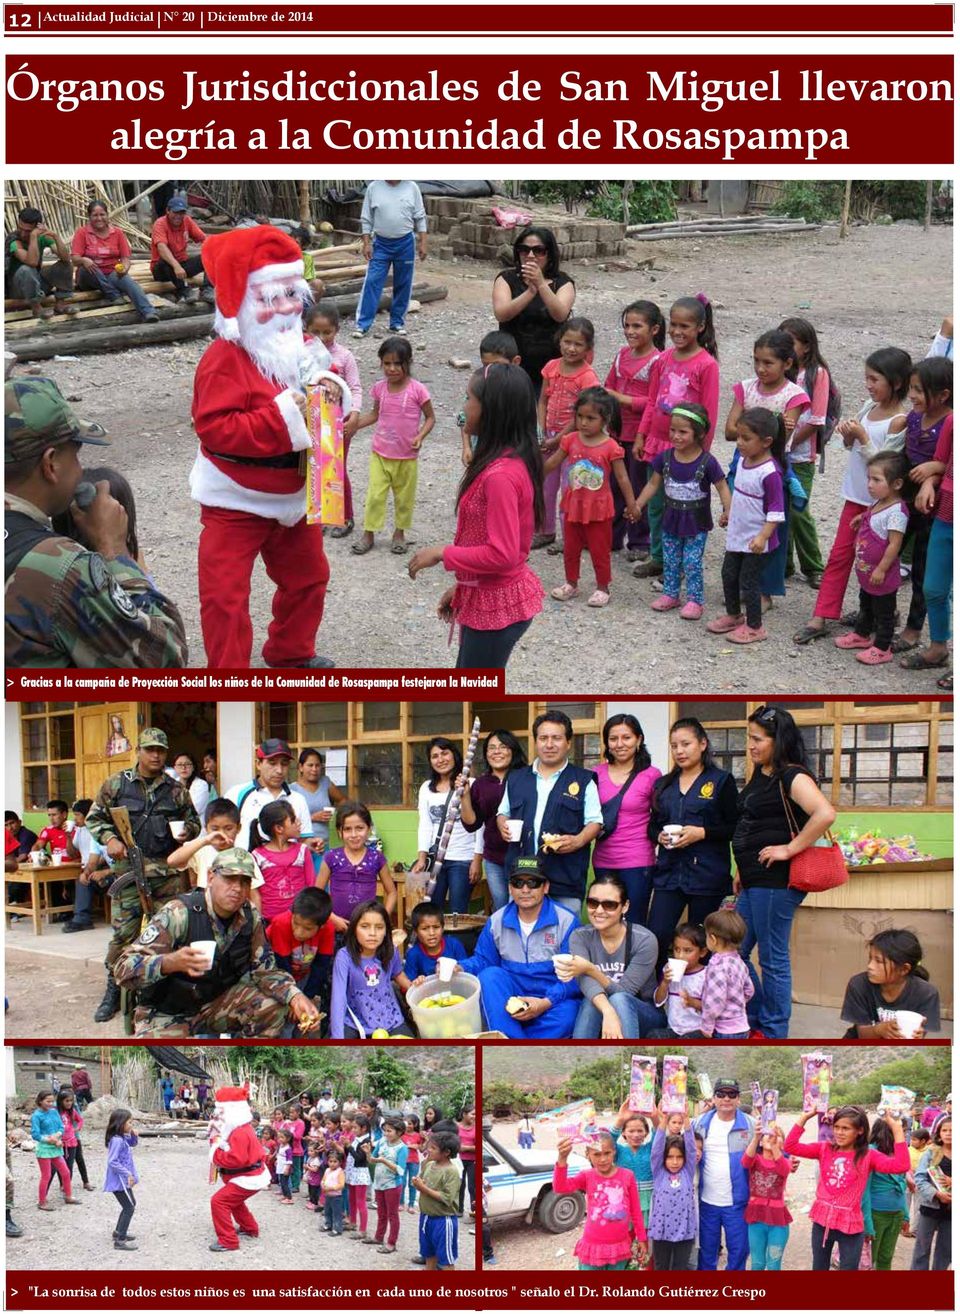 Social los niños de la Comunidad de Rosaspampa festejaron la Navidad > "La sonrisa de